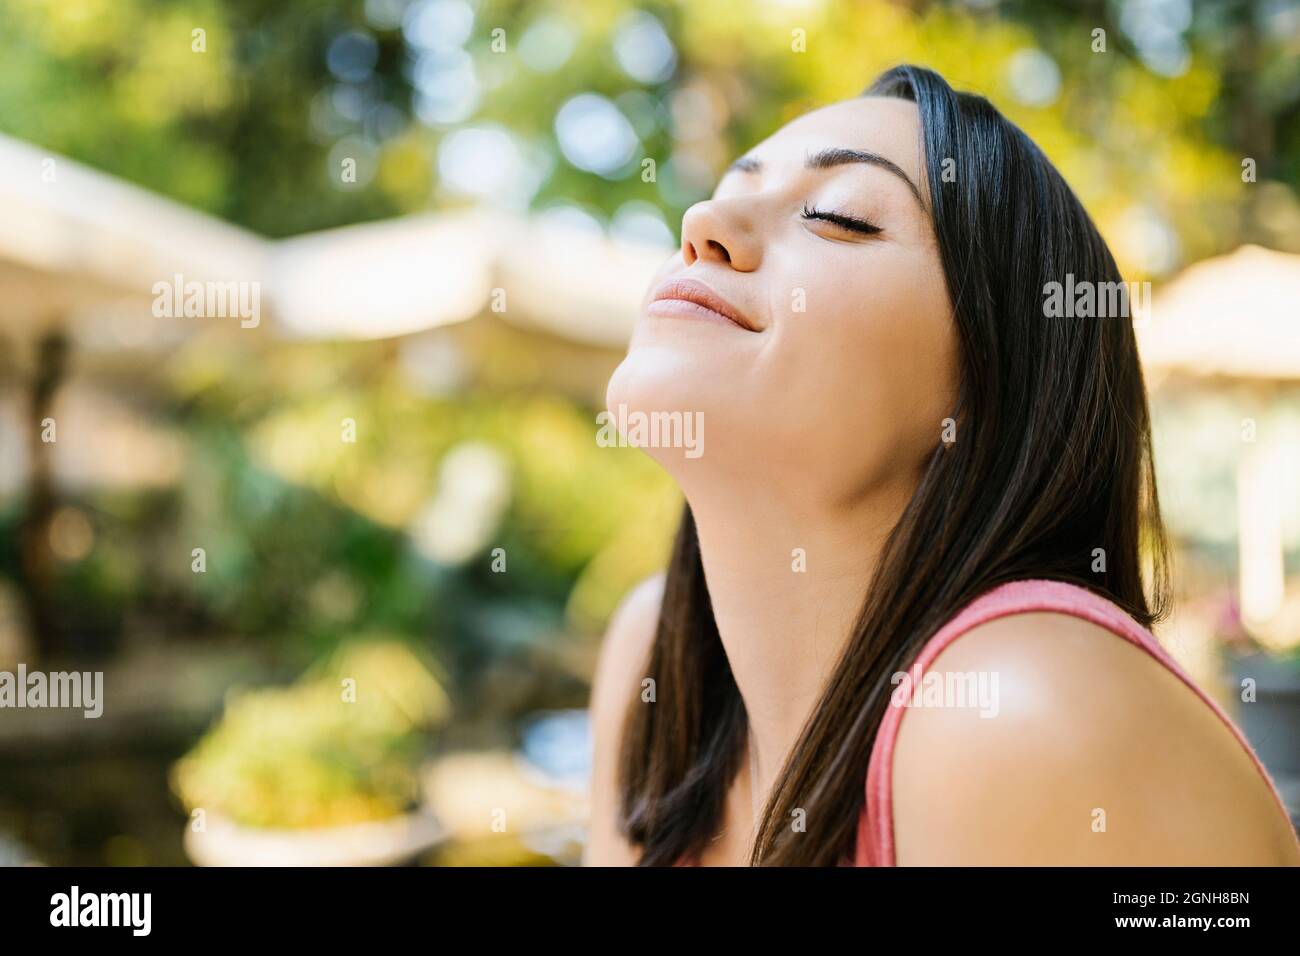 Gesunde junge Erwachsene Frau, die frische Luft im Park atmet Stockfoto